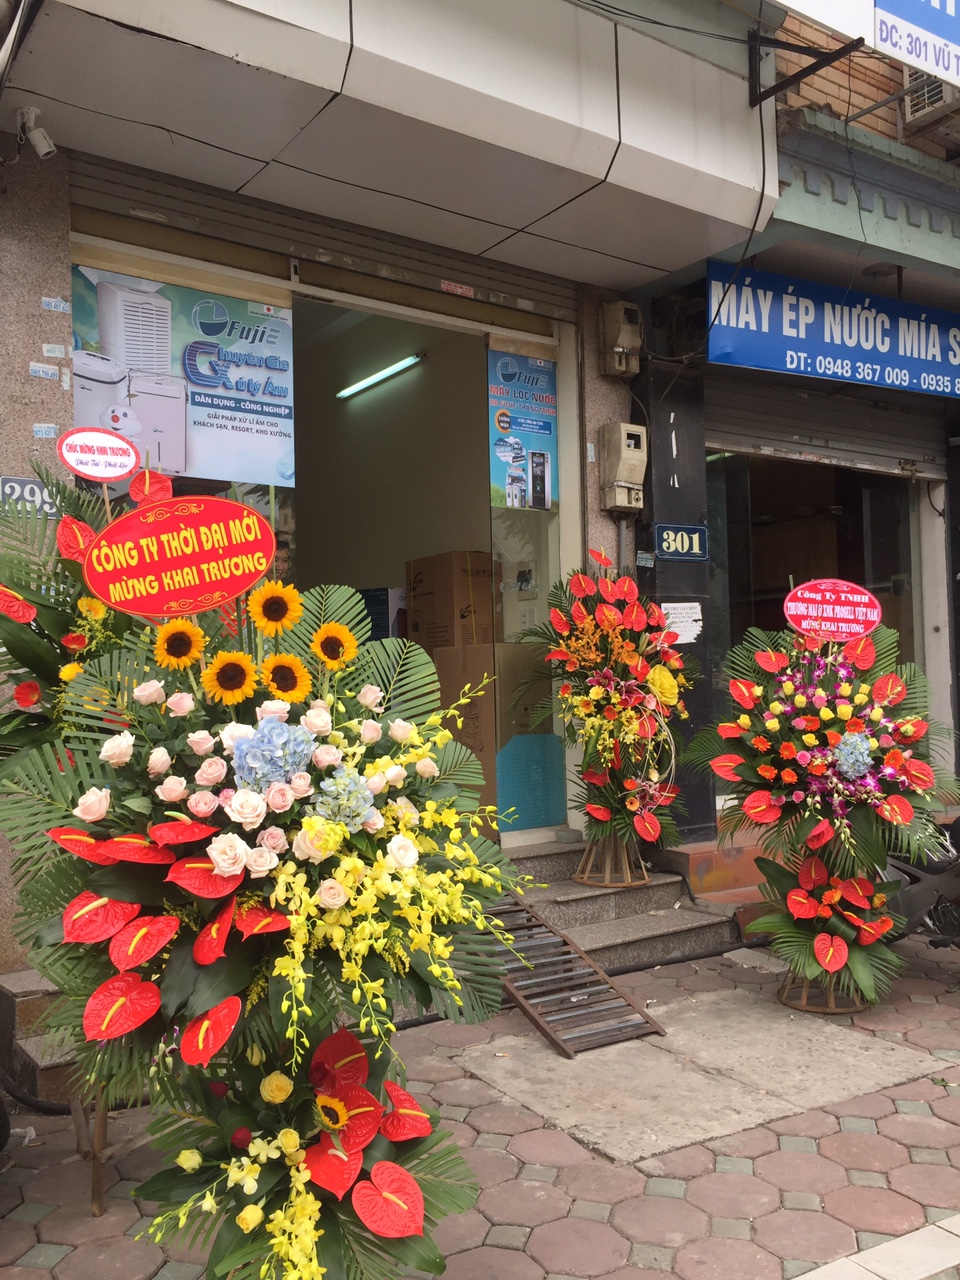 Điện máy OTB – chính thức khai trương showroom mới tại quận Thanh Xuân